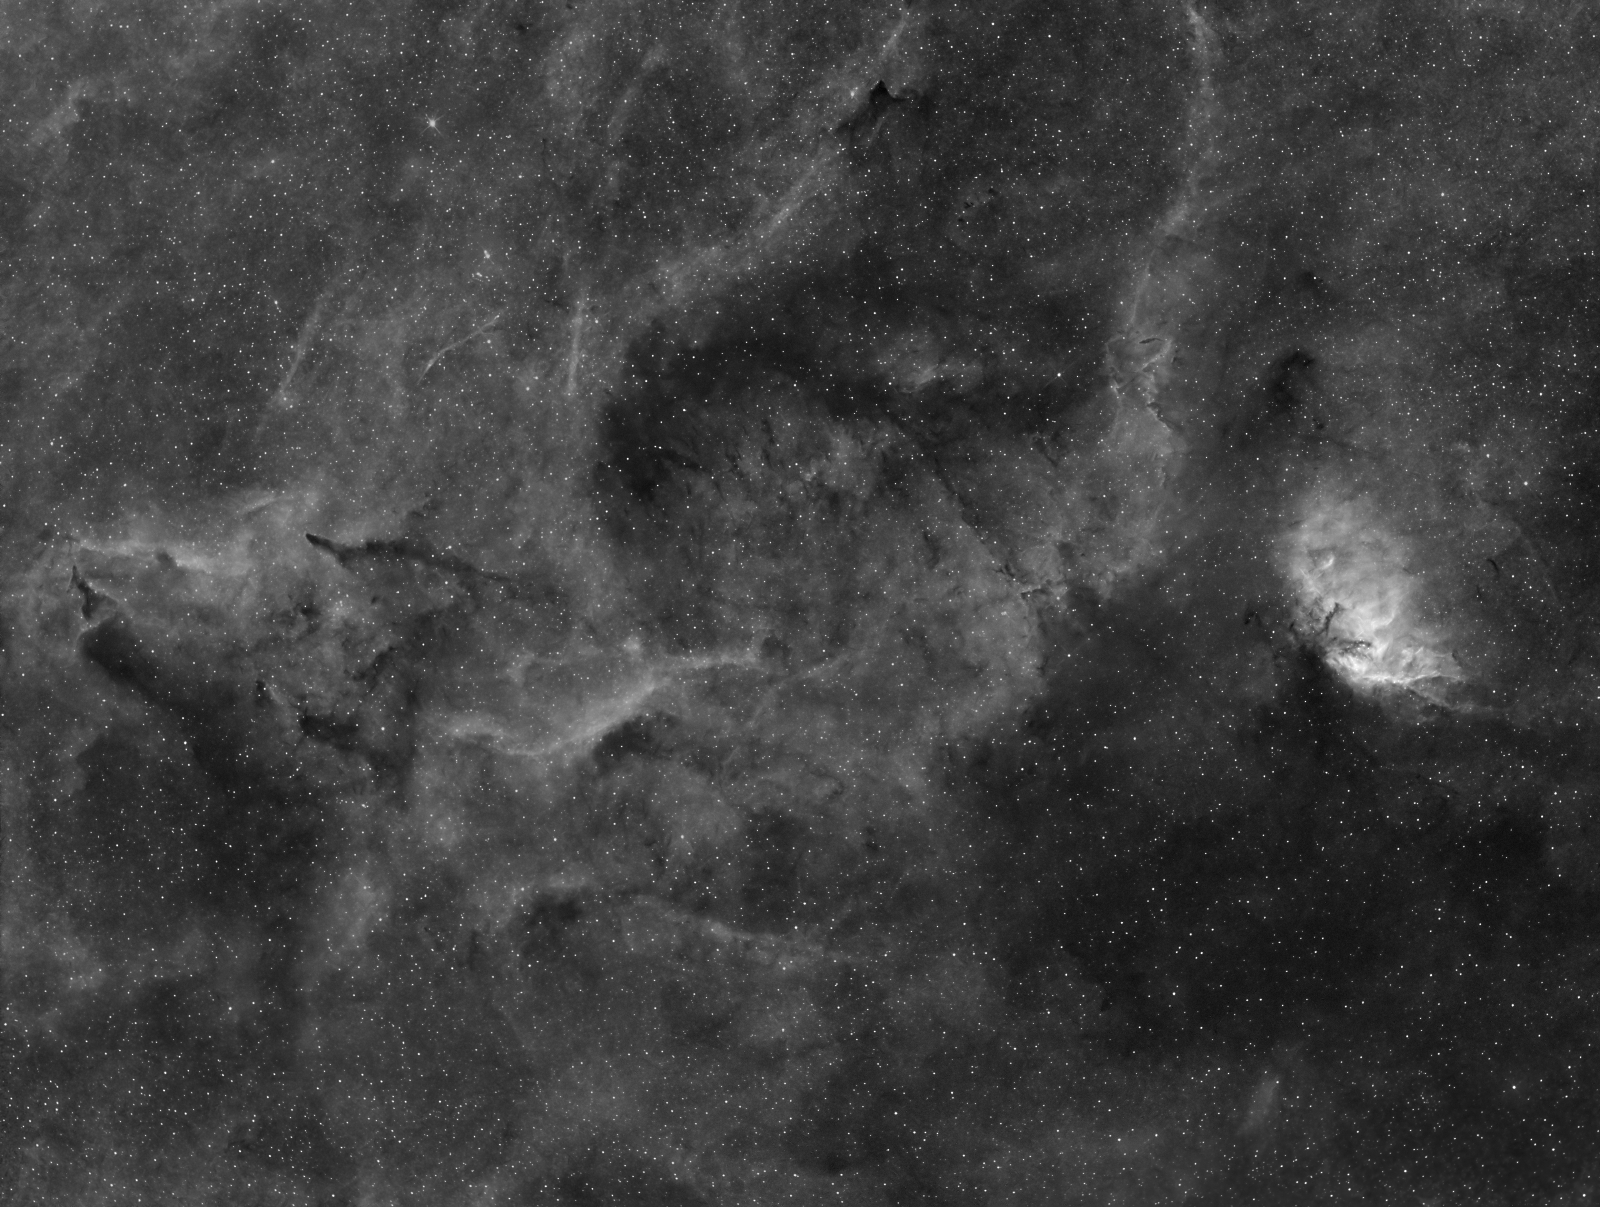 Sh2-101, NGC 6871, B146 in Ha